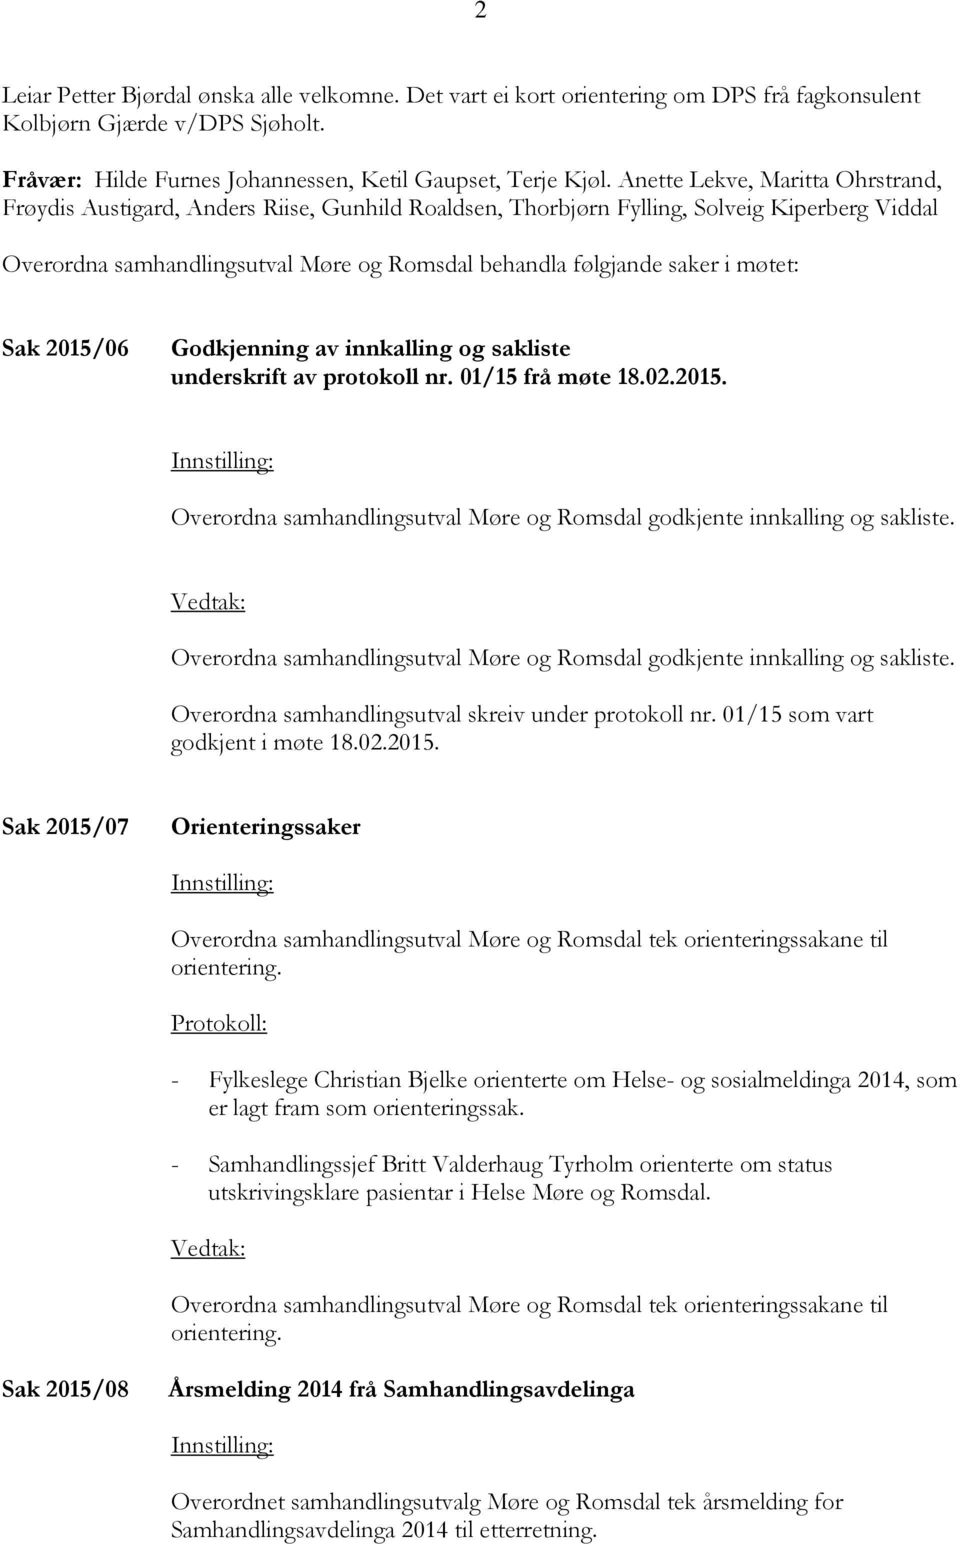 møtet: Sak 2015/06 Godkjenning av innkalling og sakliste underskrift av protokoll nr. 01/15 frå møte 18.02.2015. Overordna samhandlingsutval Møre og Romsdal godkjente innkalling og sakliste.